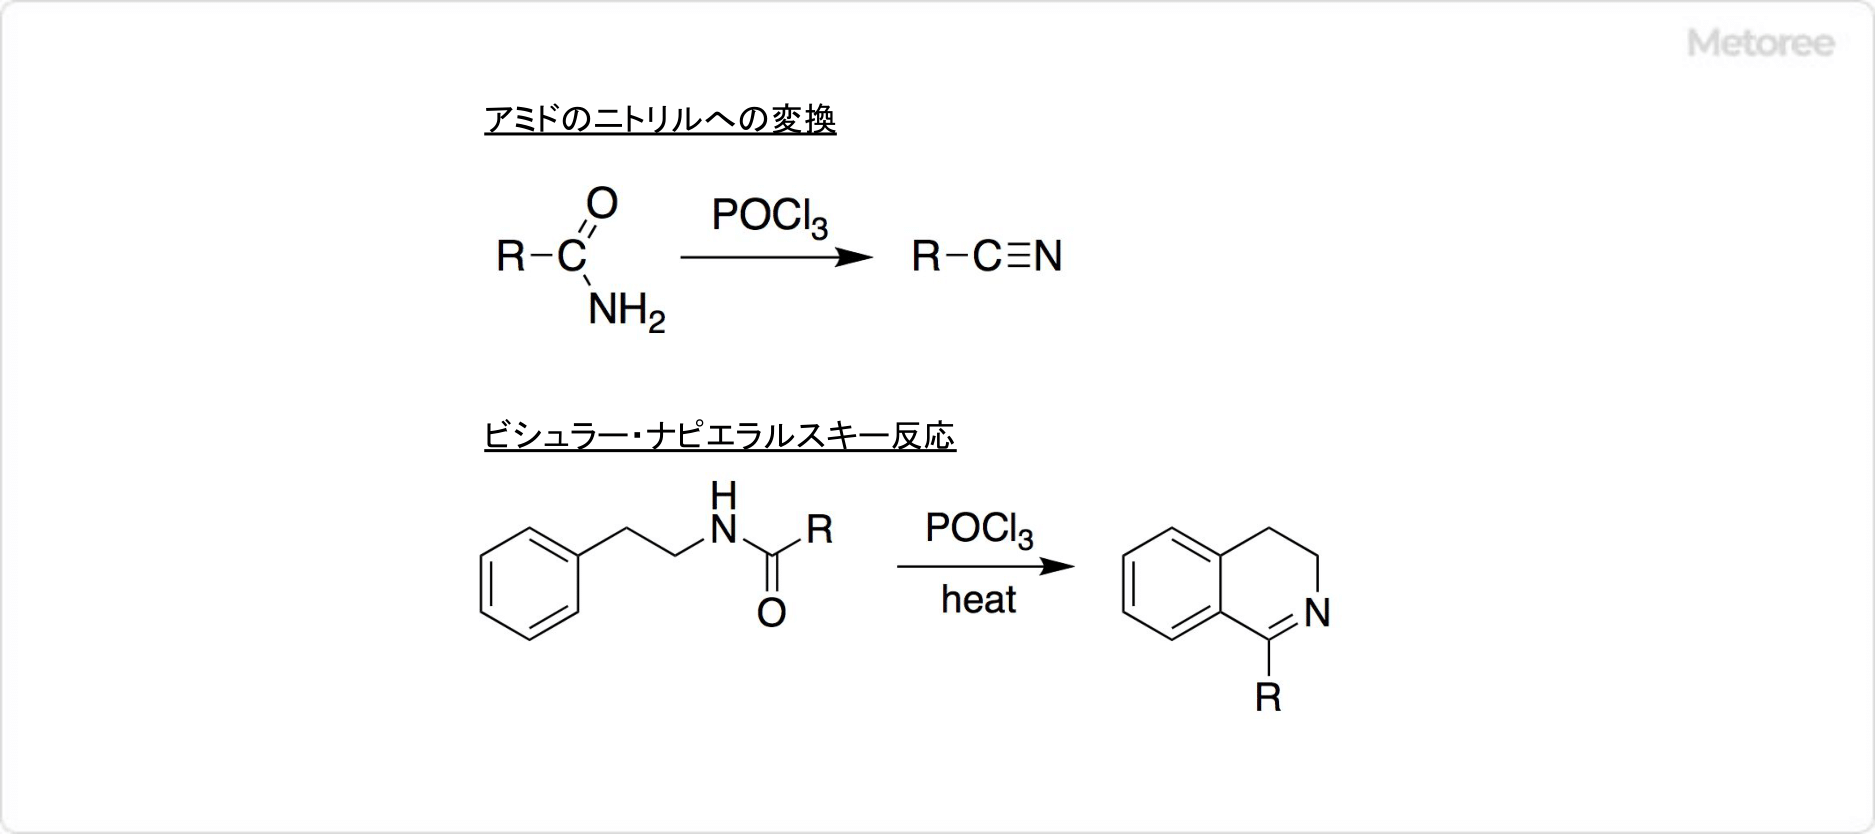 オキシ塩化リンを用いた反応